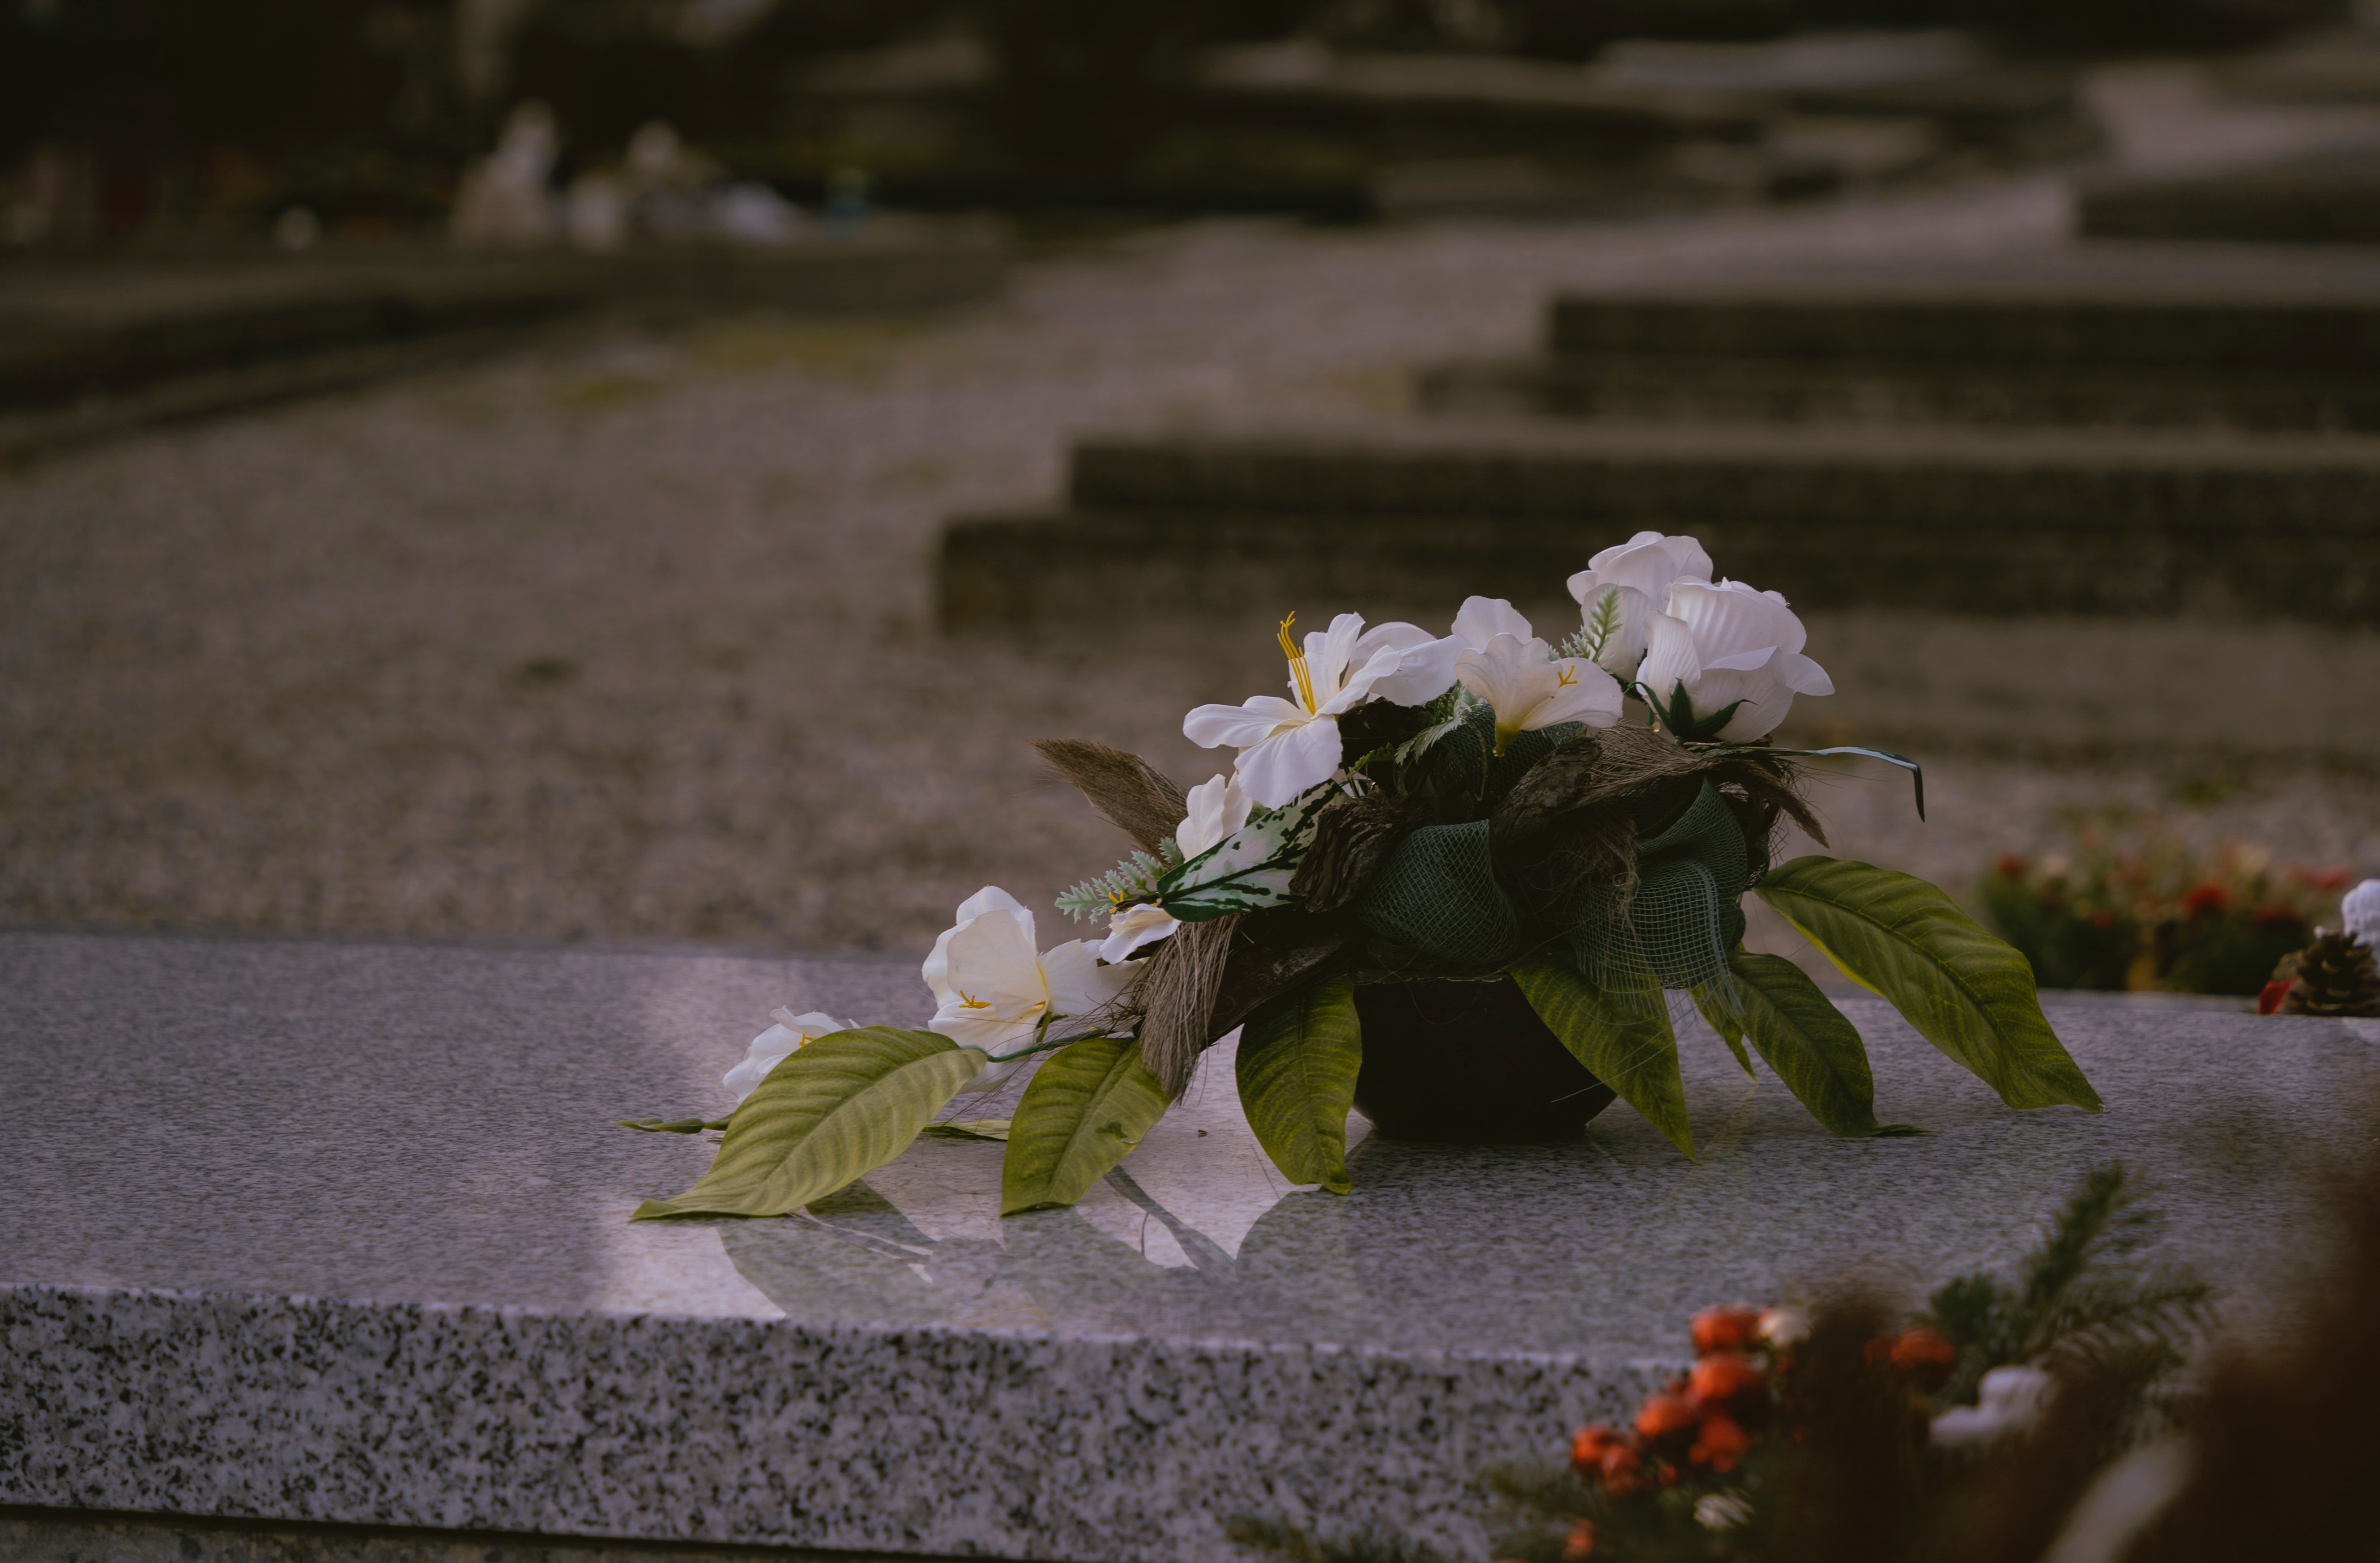 Edgar sah, wie die Frau Blumen auf Carolines Grab legte. | Quelle: Unsplash